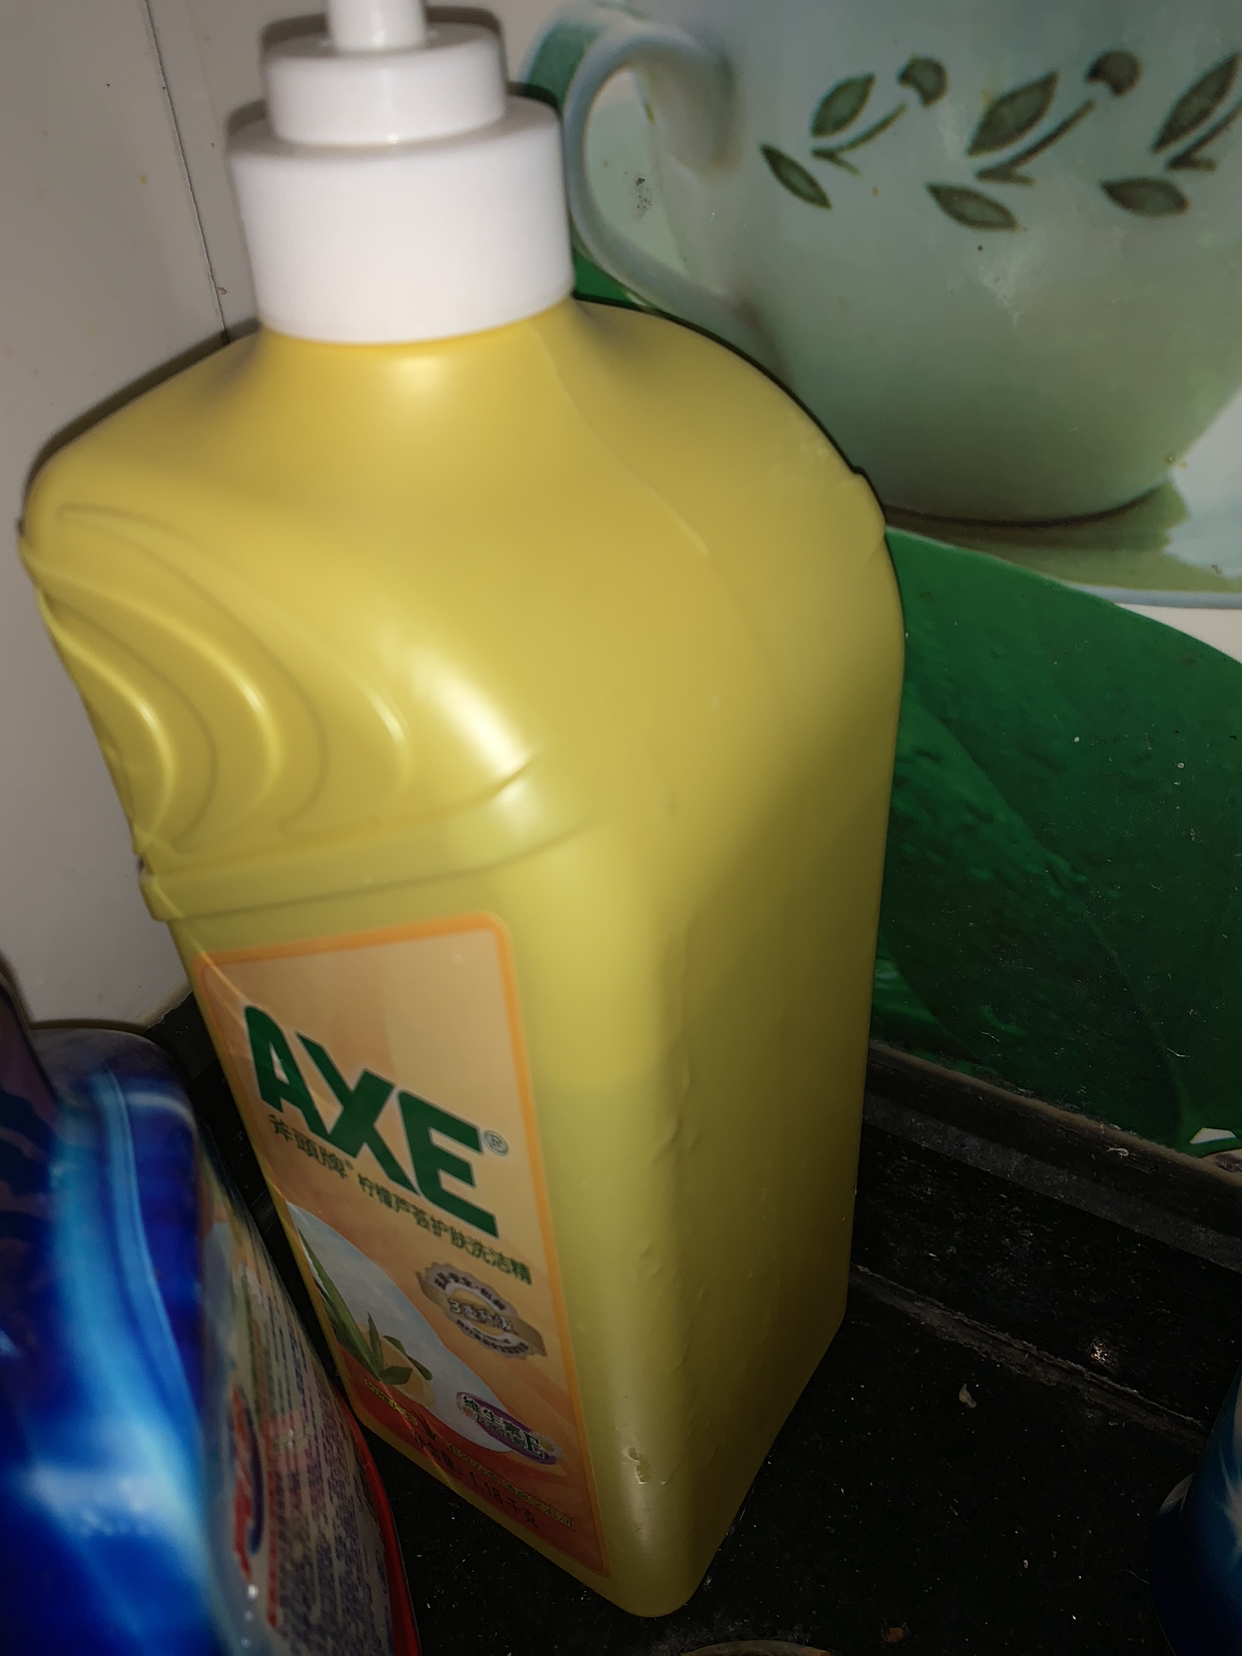 AXE/斧头牌柠檬维E护肤洗洁精 1.18kg*6蔬果洗涤碗剂家庭用装晒单图